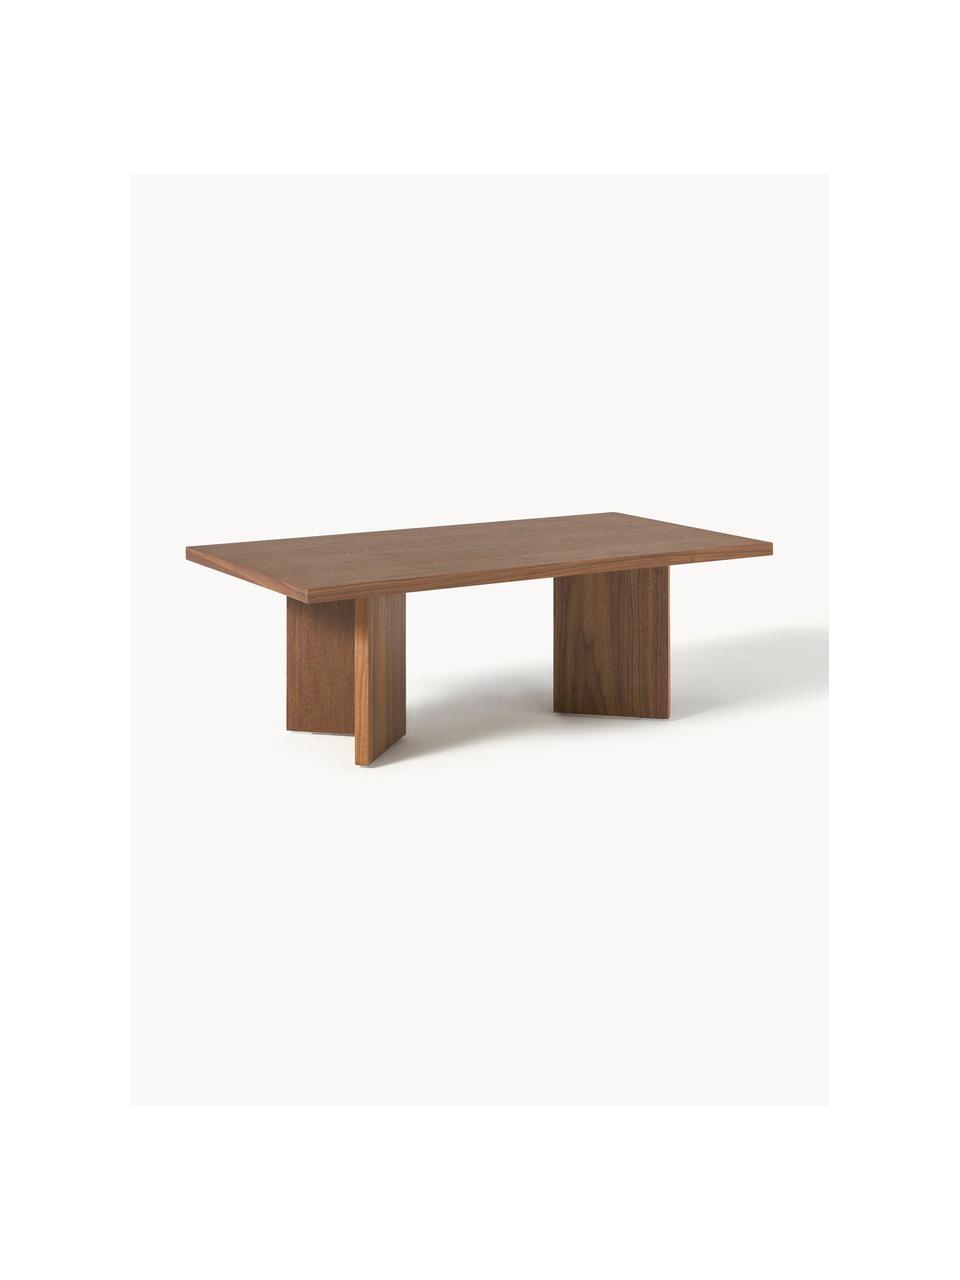 Dřevěný konferenční stolek Toni, Dřevovláknitá deska střední hustoty (MDF) s lakovaná dýha z ořechového dřeva

Tento produkt je vyroben z udržitelných zdrojů dřeva s certifikací FSC®., Ořechové dřevo, Š 100 cm, H 55 cm